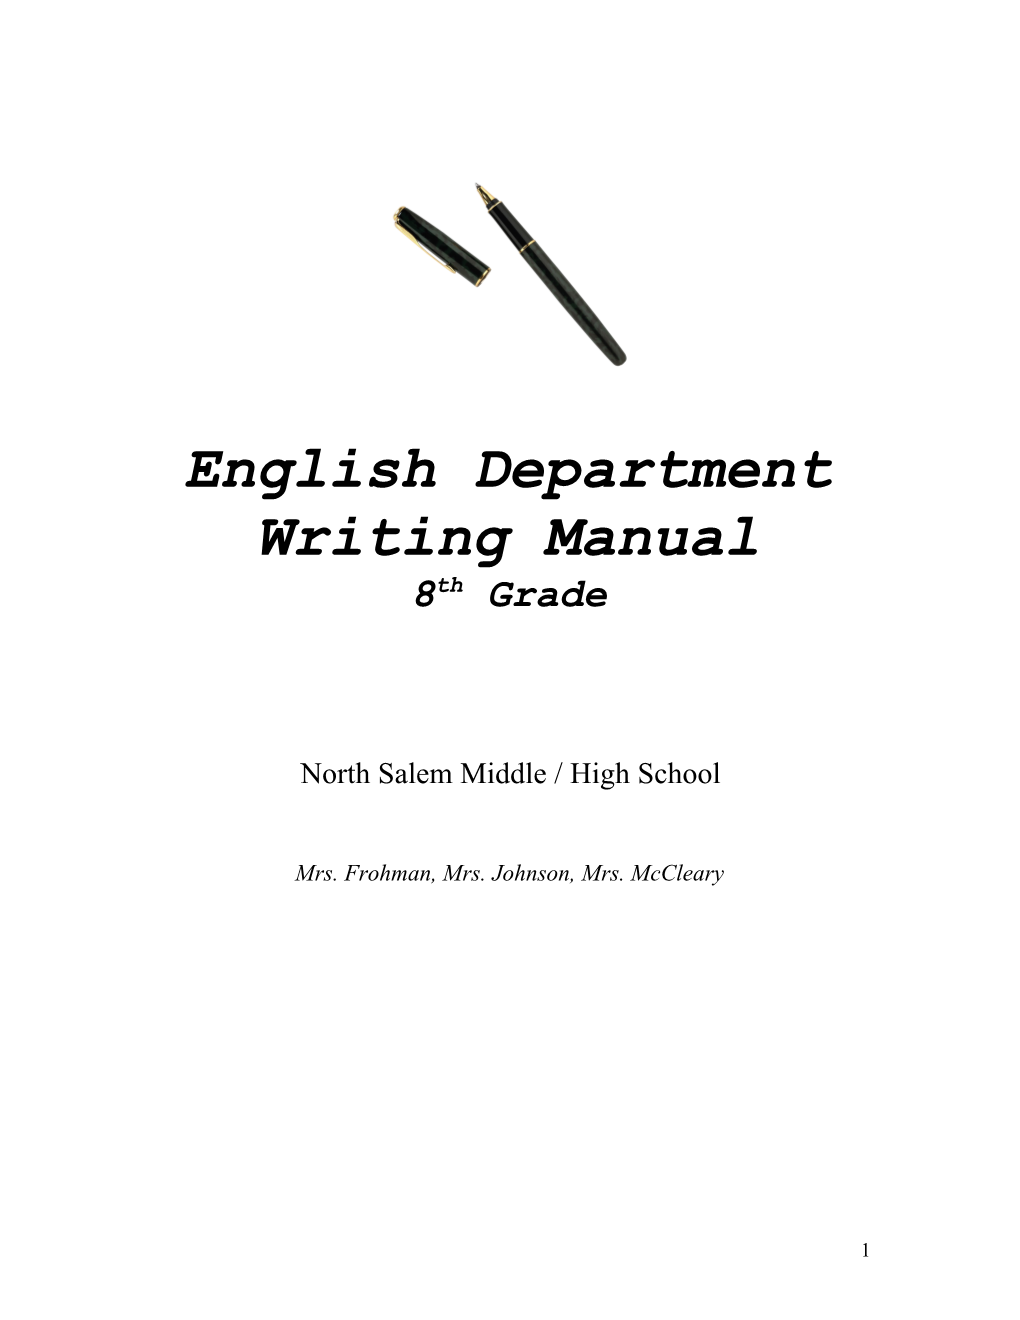 English Department Writing Manual